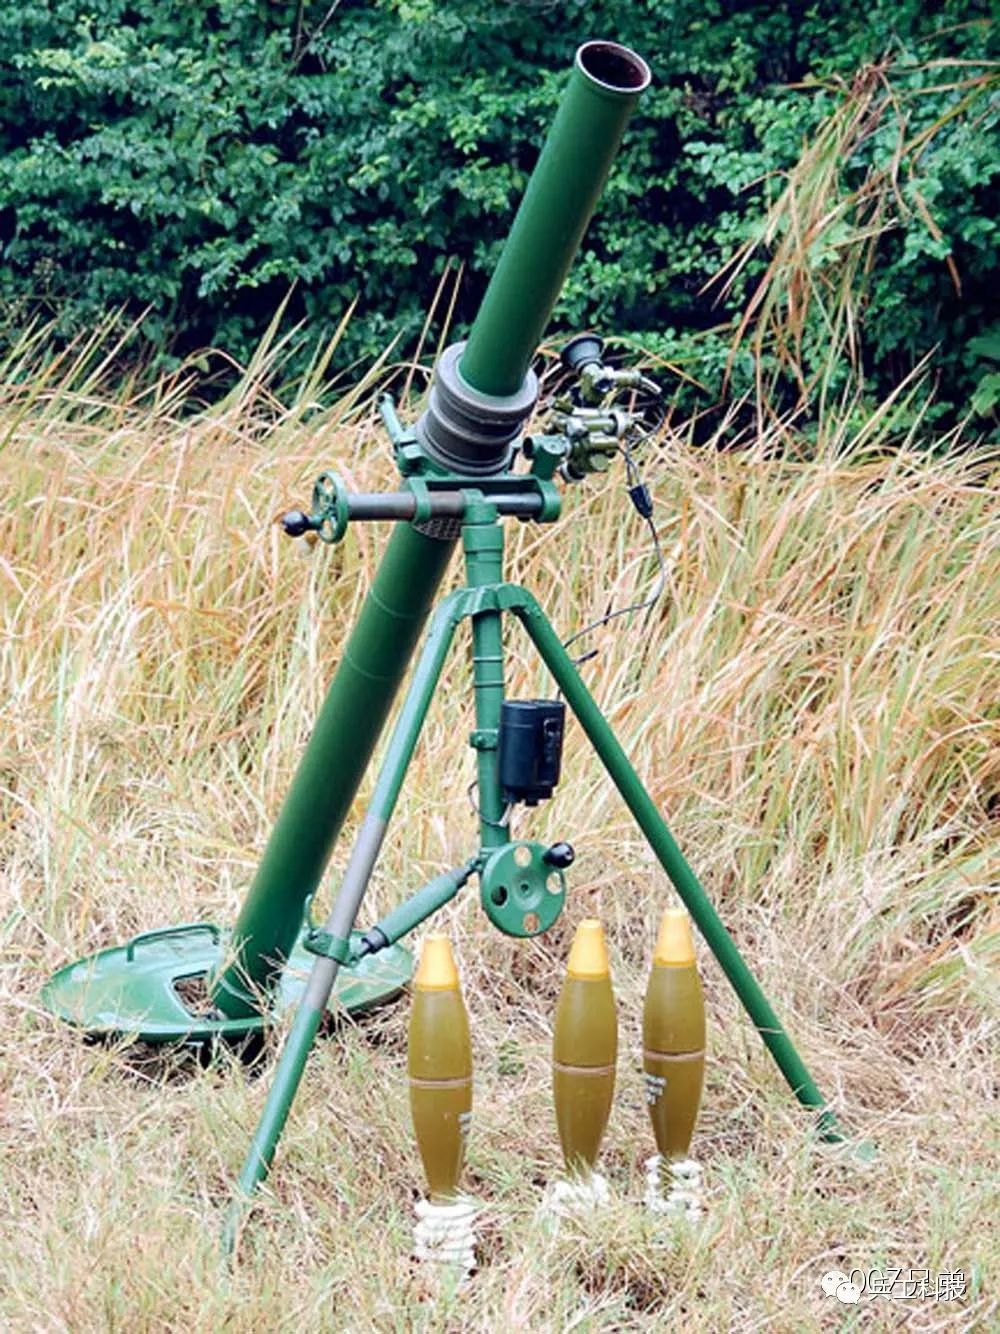 对越作战经验教训深刻影响我军迫击炮发展160毫米功勋炮自此退休